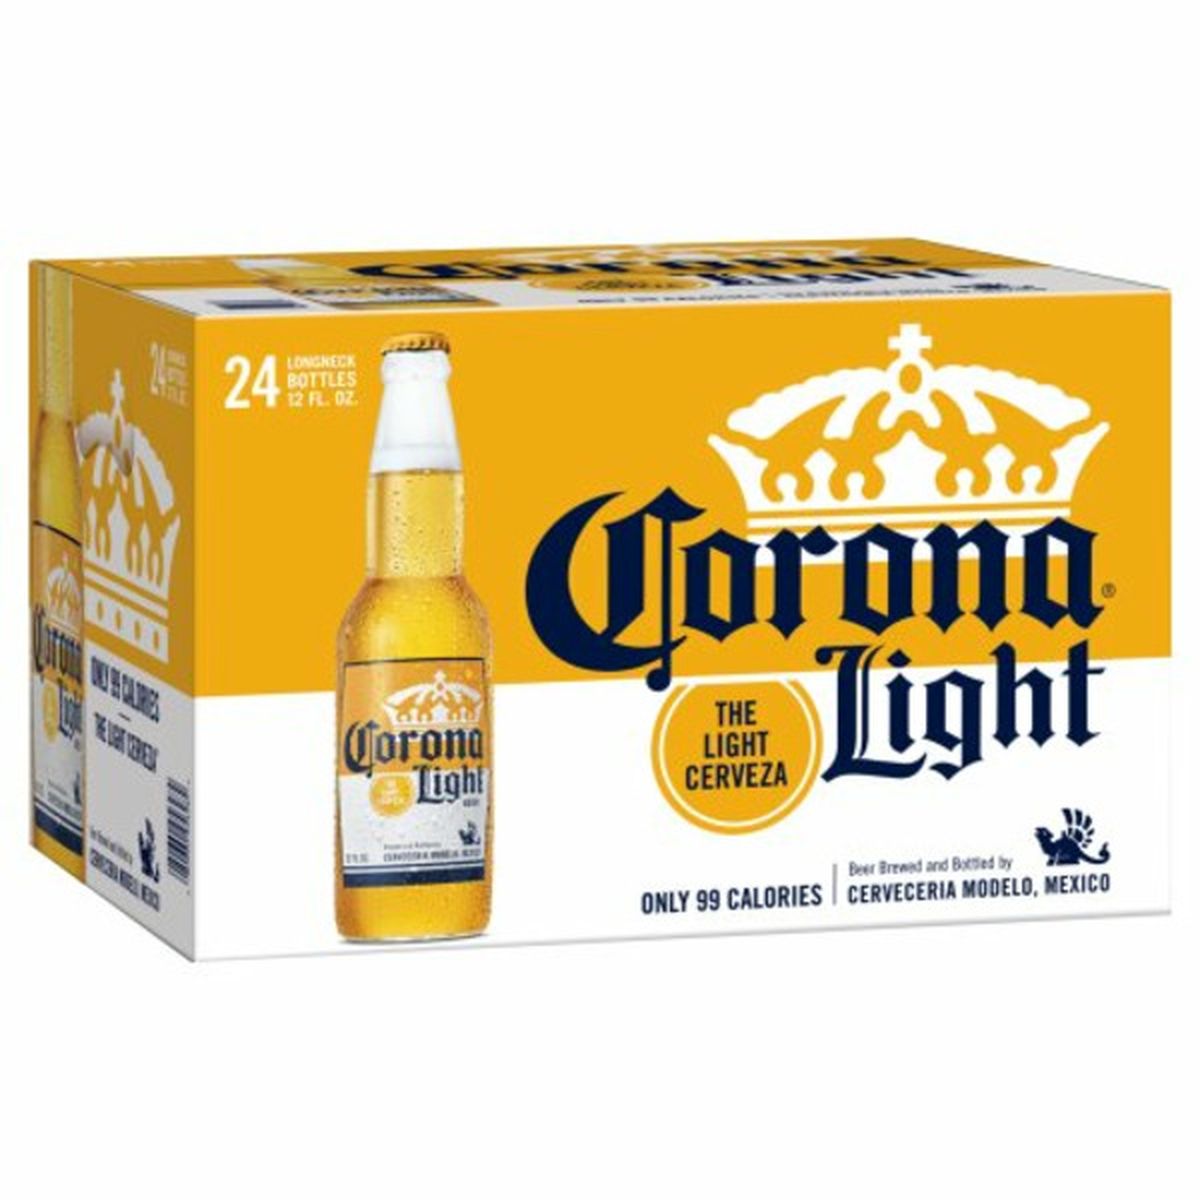 Calories in Corona Light Light  24/12 oz bottles